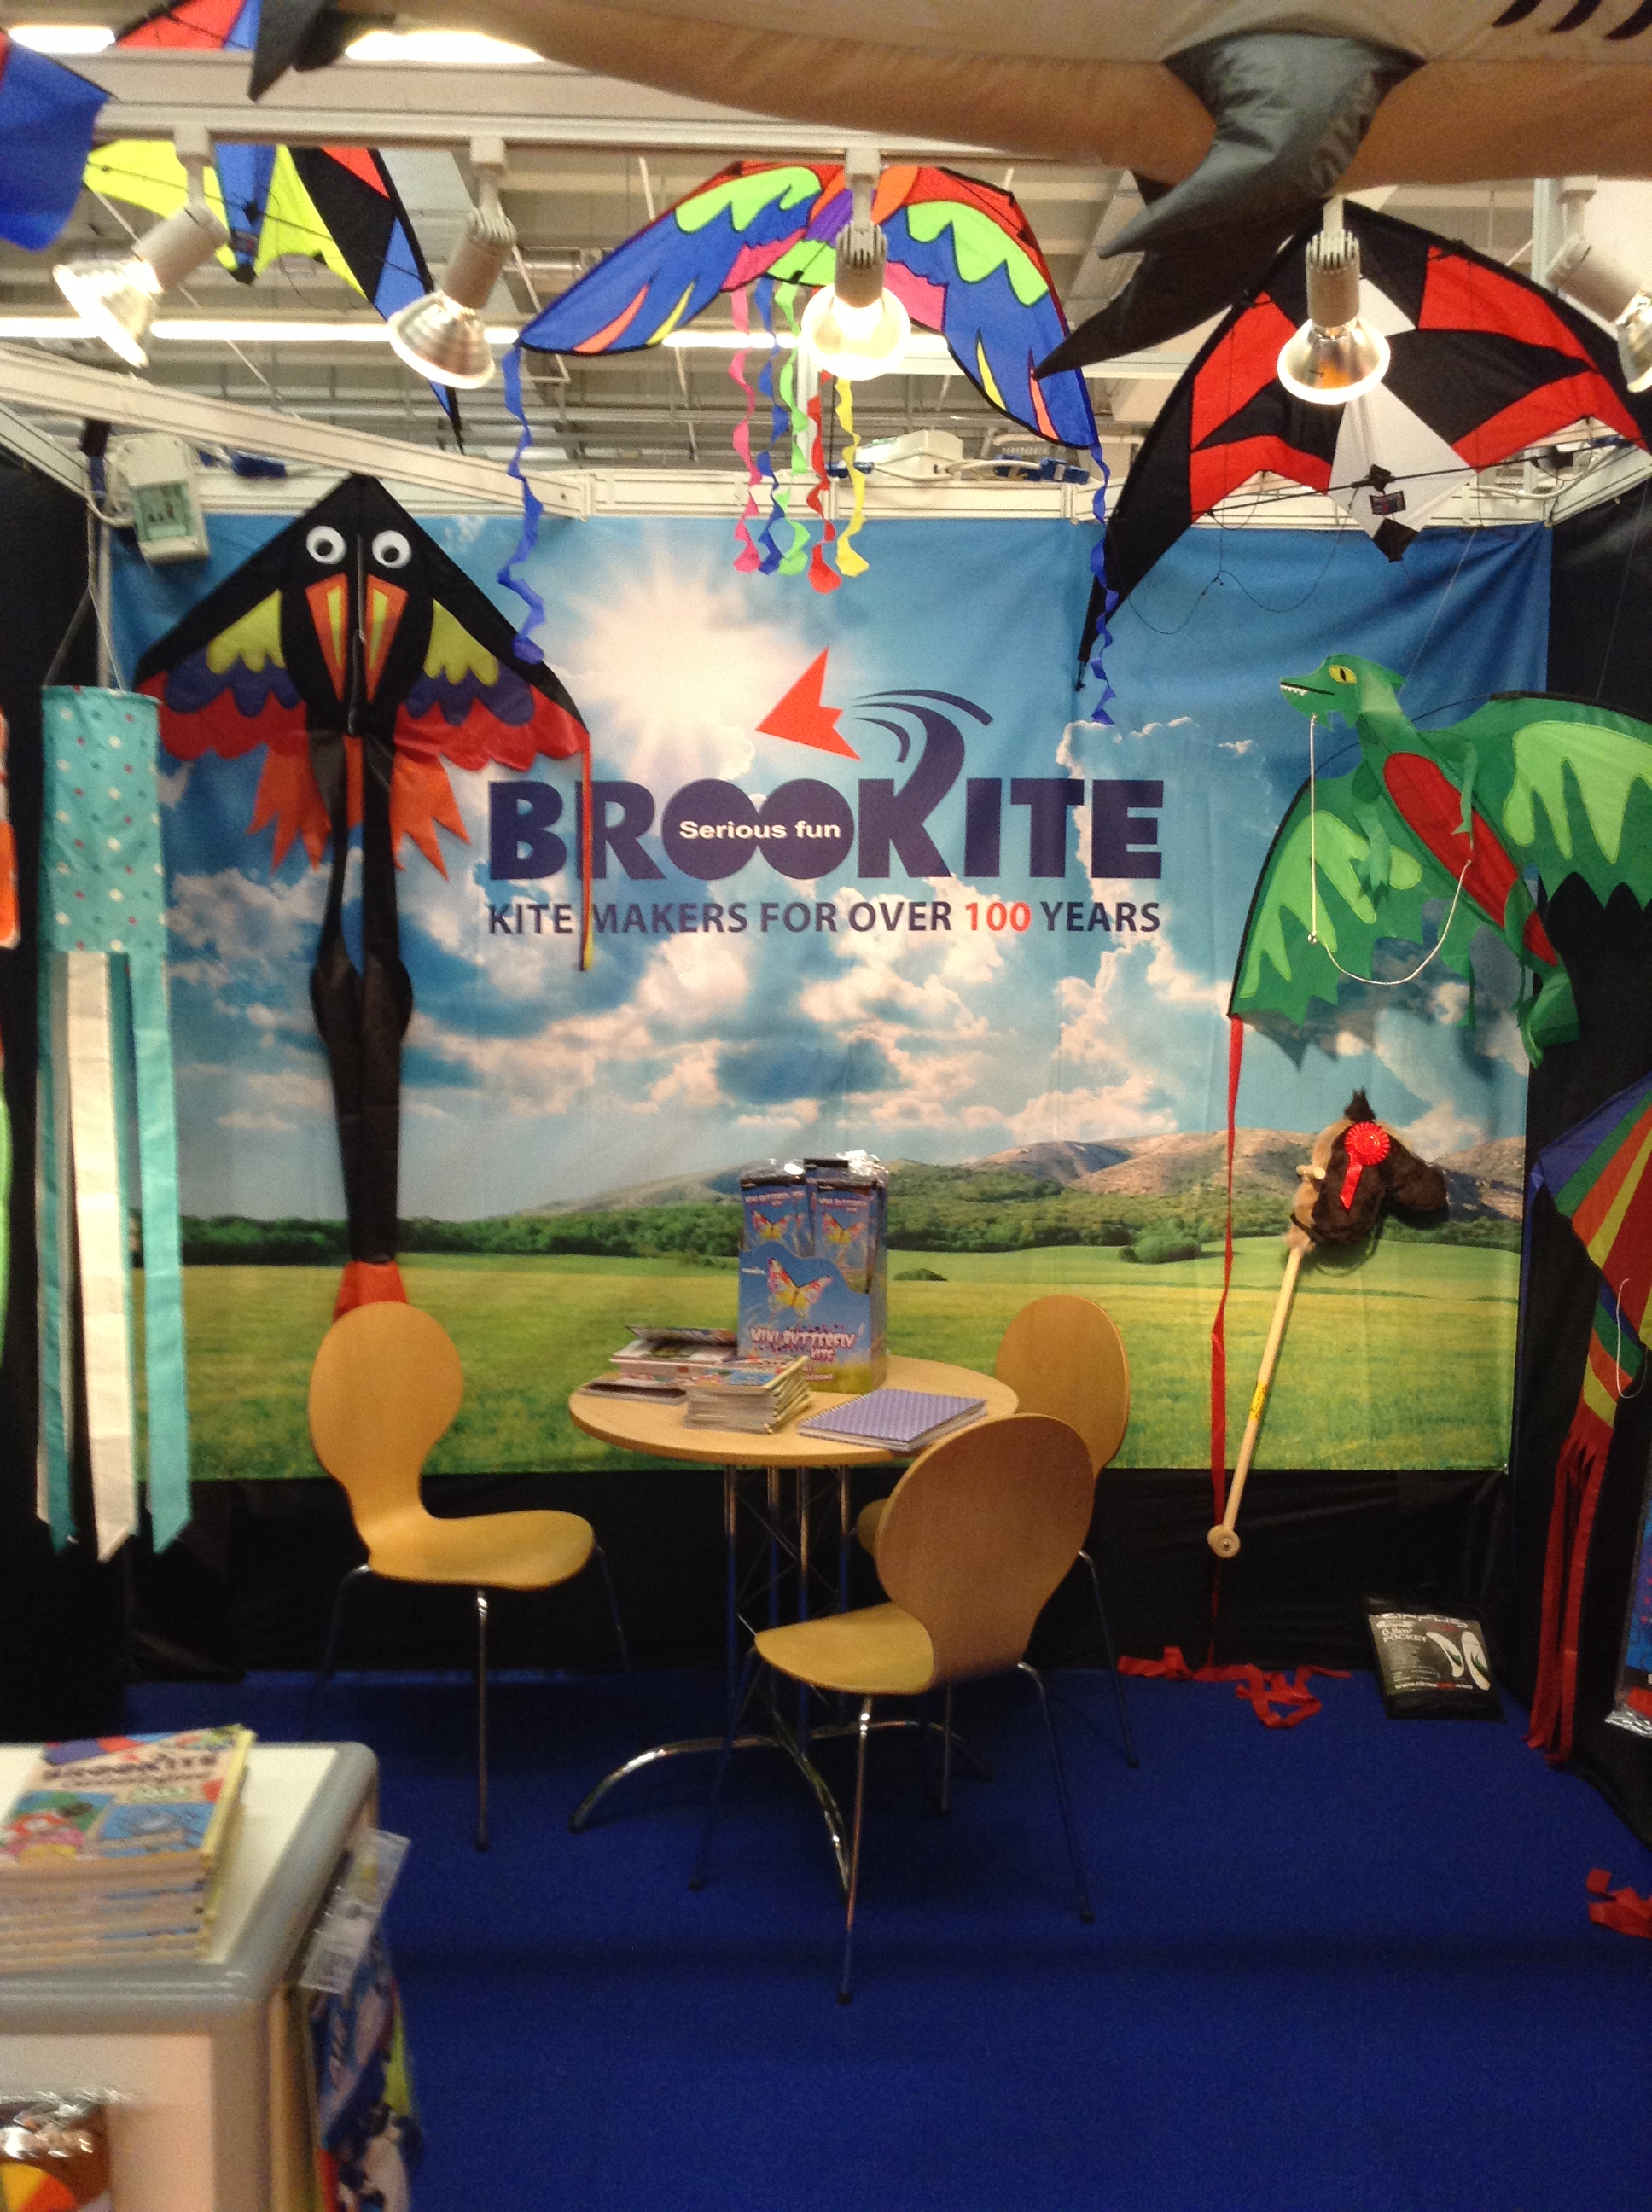 Brookite Kites